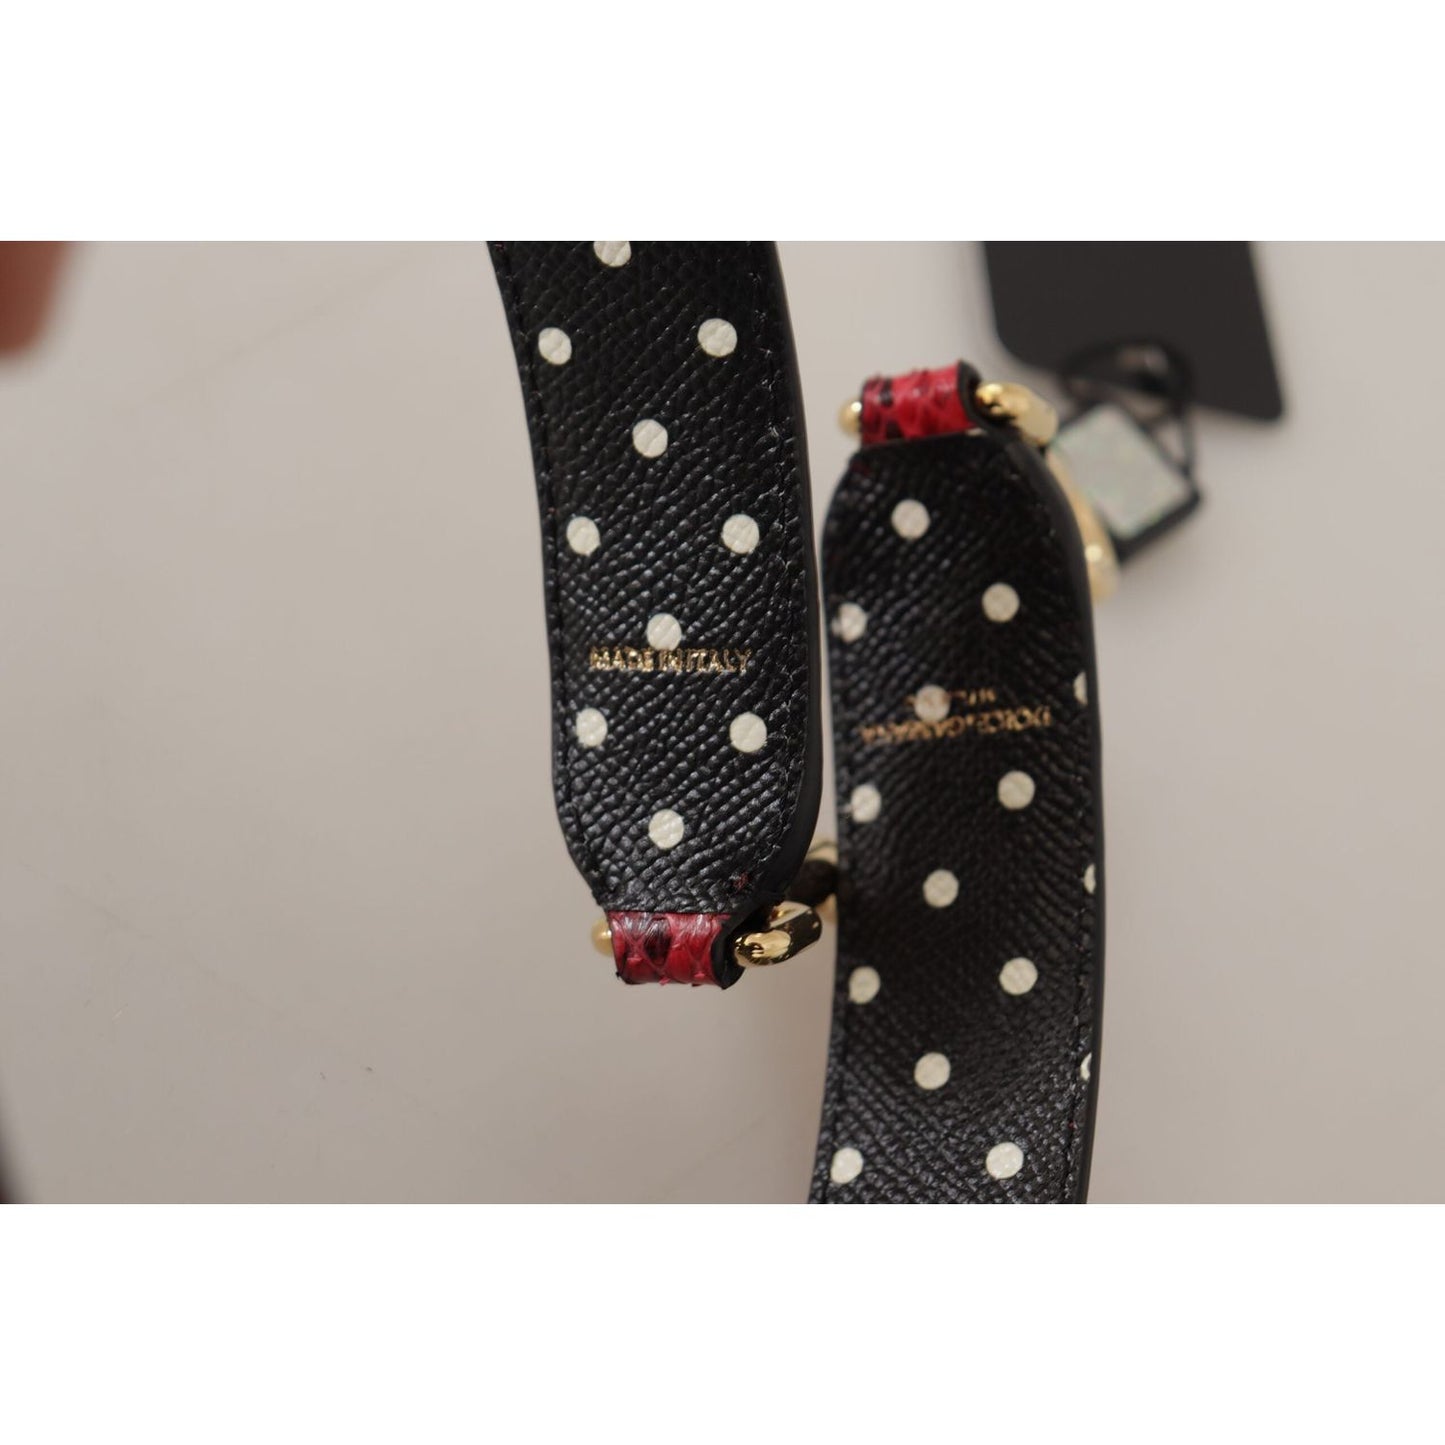 Dolce & Gabbana Elegant Red Python Leather Shoulder Strap red-python-leather-crystals-reversible-shoulder-strap-1